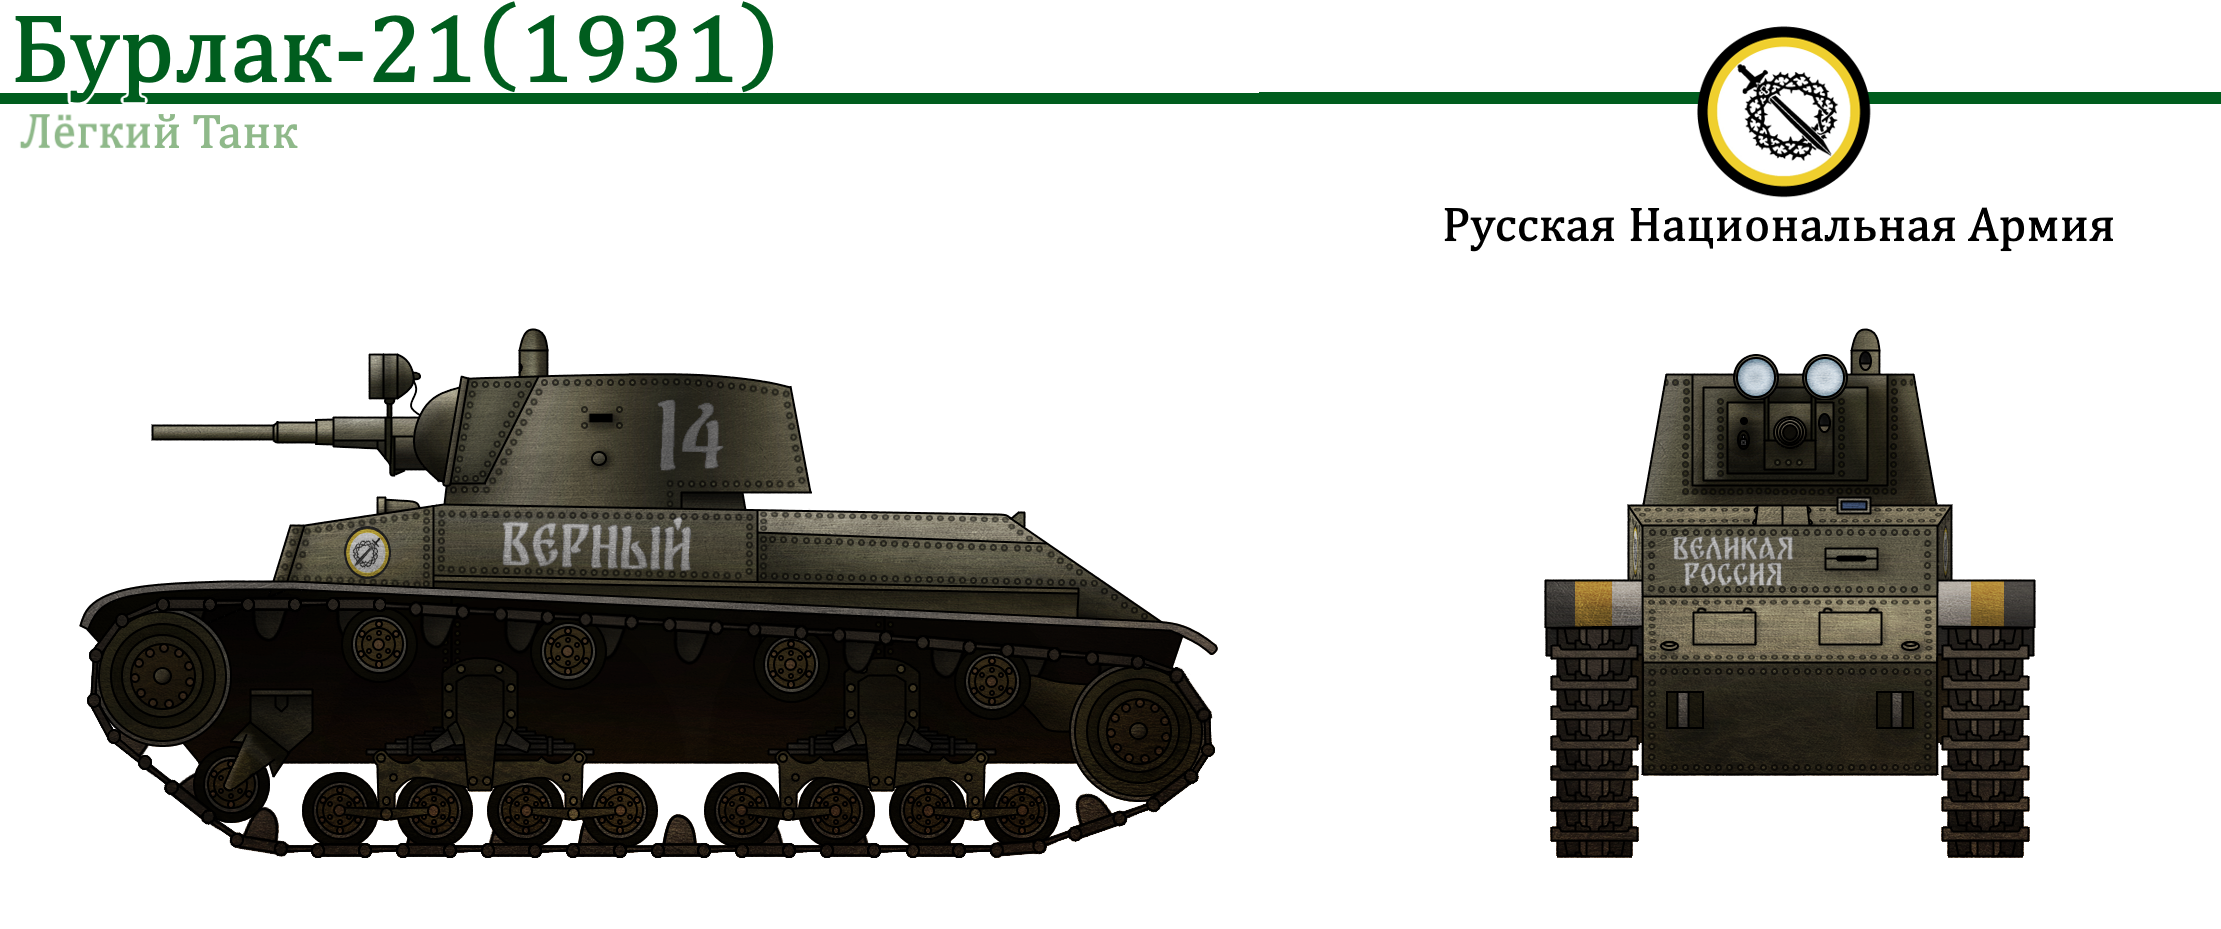 Бурлак-21 и Бурлак-21А (Объект 321). Серия Лёгких Танков для Российской Национальной Республики из Vladkov Conspiracy Theory